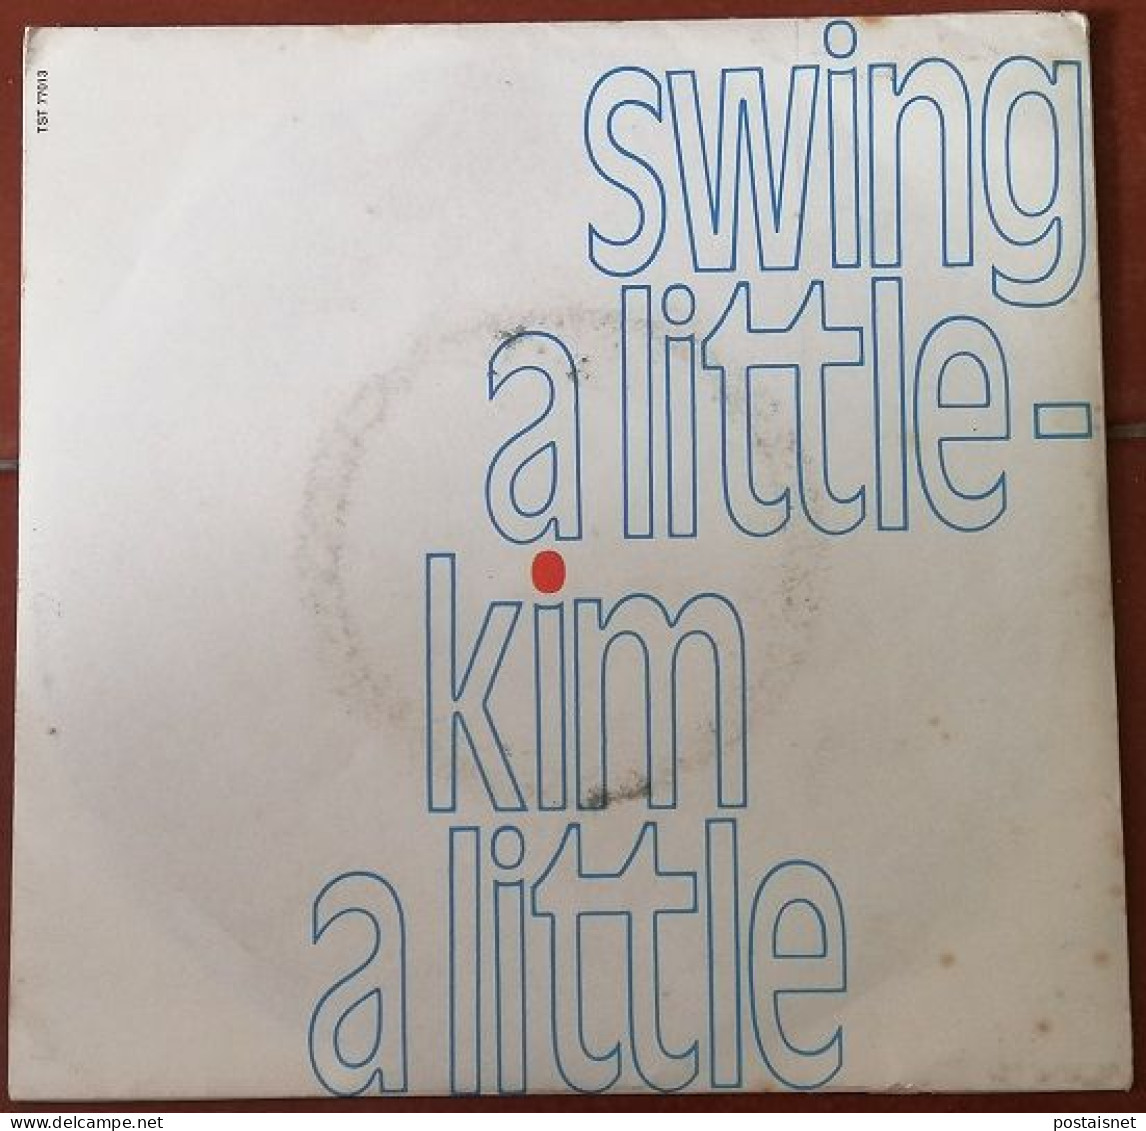 Single Swing A Little - Kim A Little – Germany – 1972 - Soul - R&B